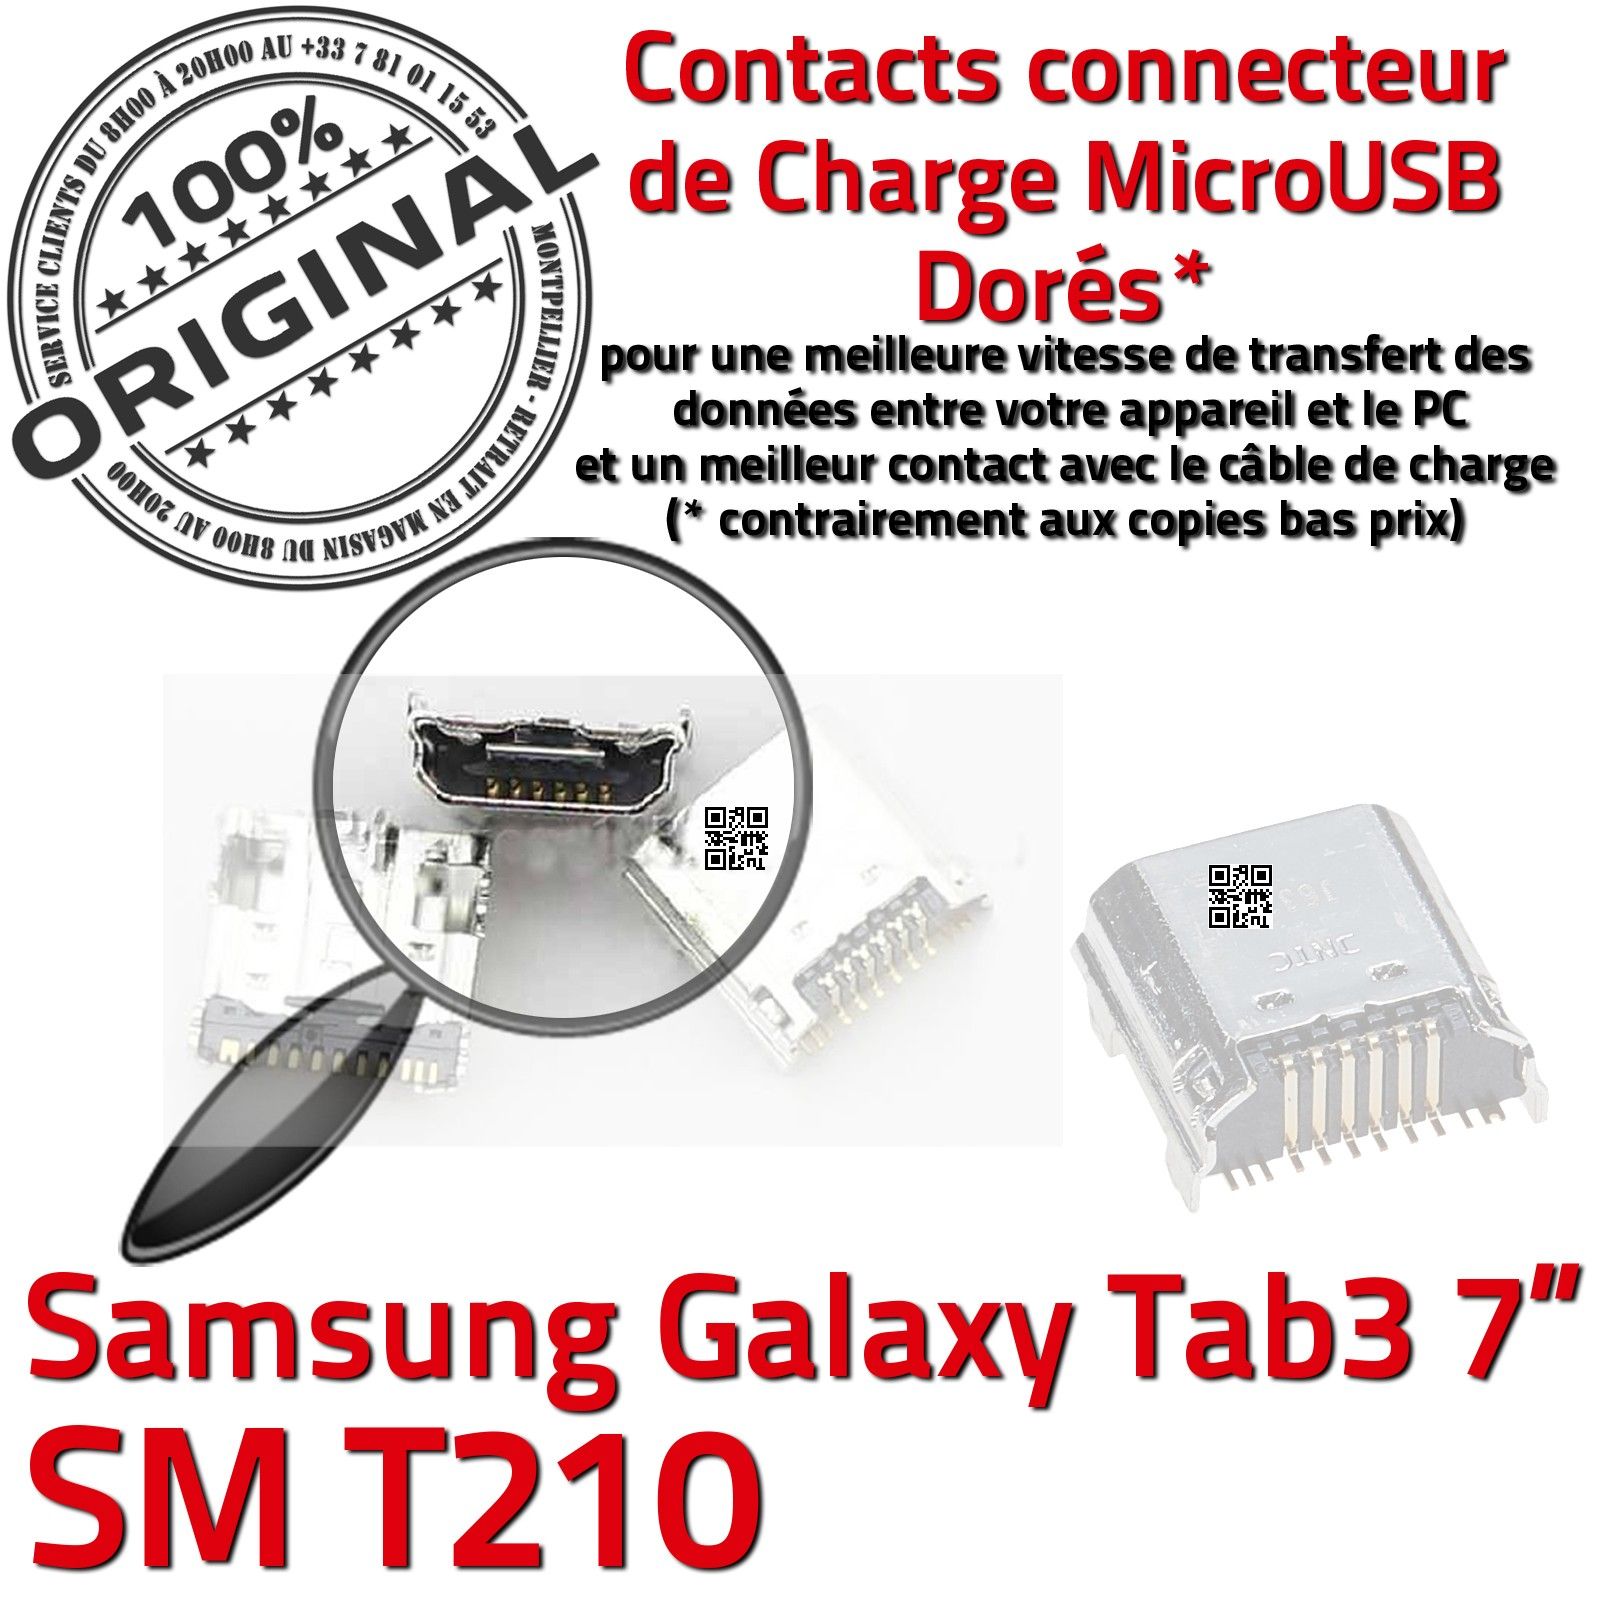 ORIGINAL Samsung Galaxy TAB 3 SM T210 Connecteur de charge à souder Micro USB Pins Dorés Dock Prise Connector Chargeur 7 inch